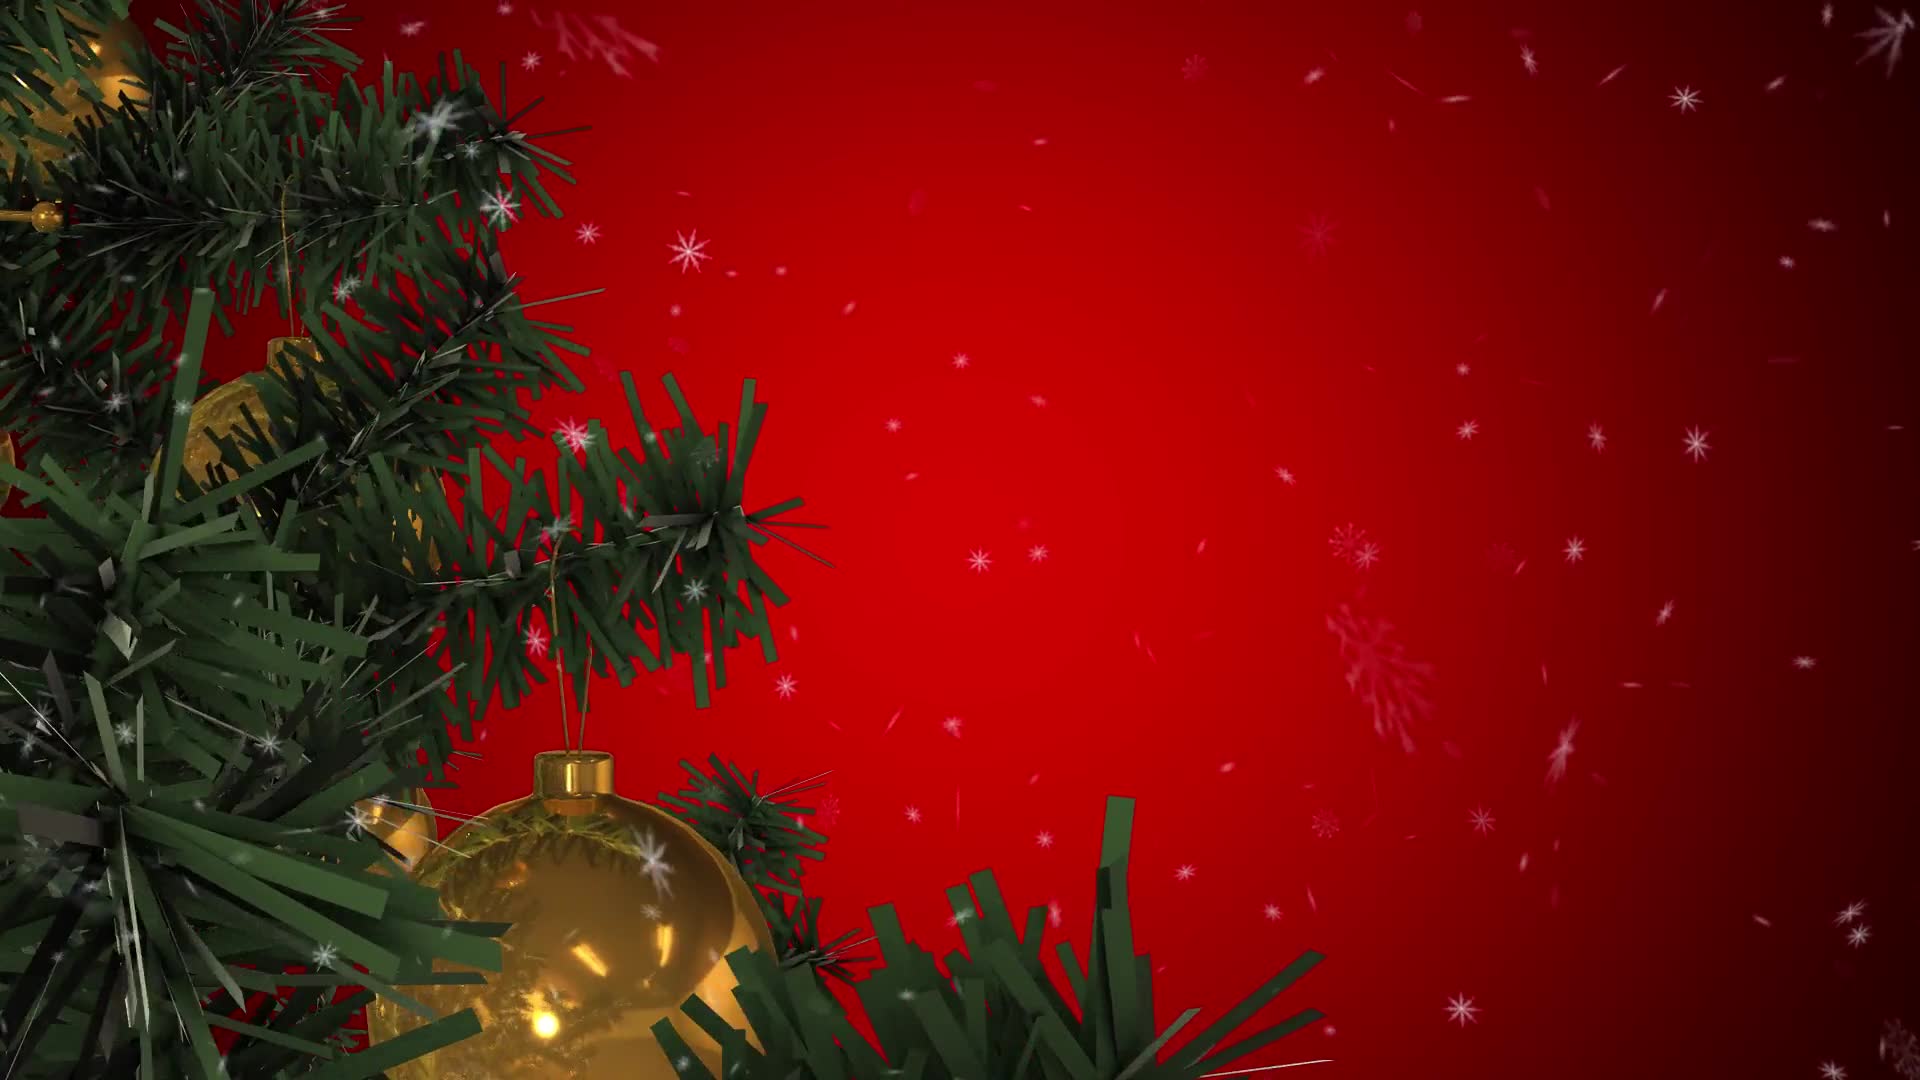 Rotating Christmas Tree Videohive 22935986 Motion Graphics Image 6